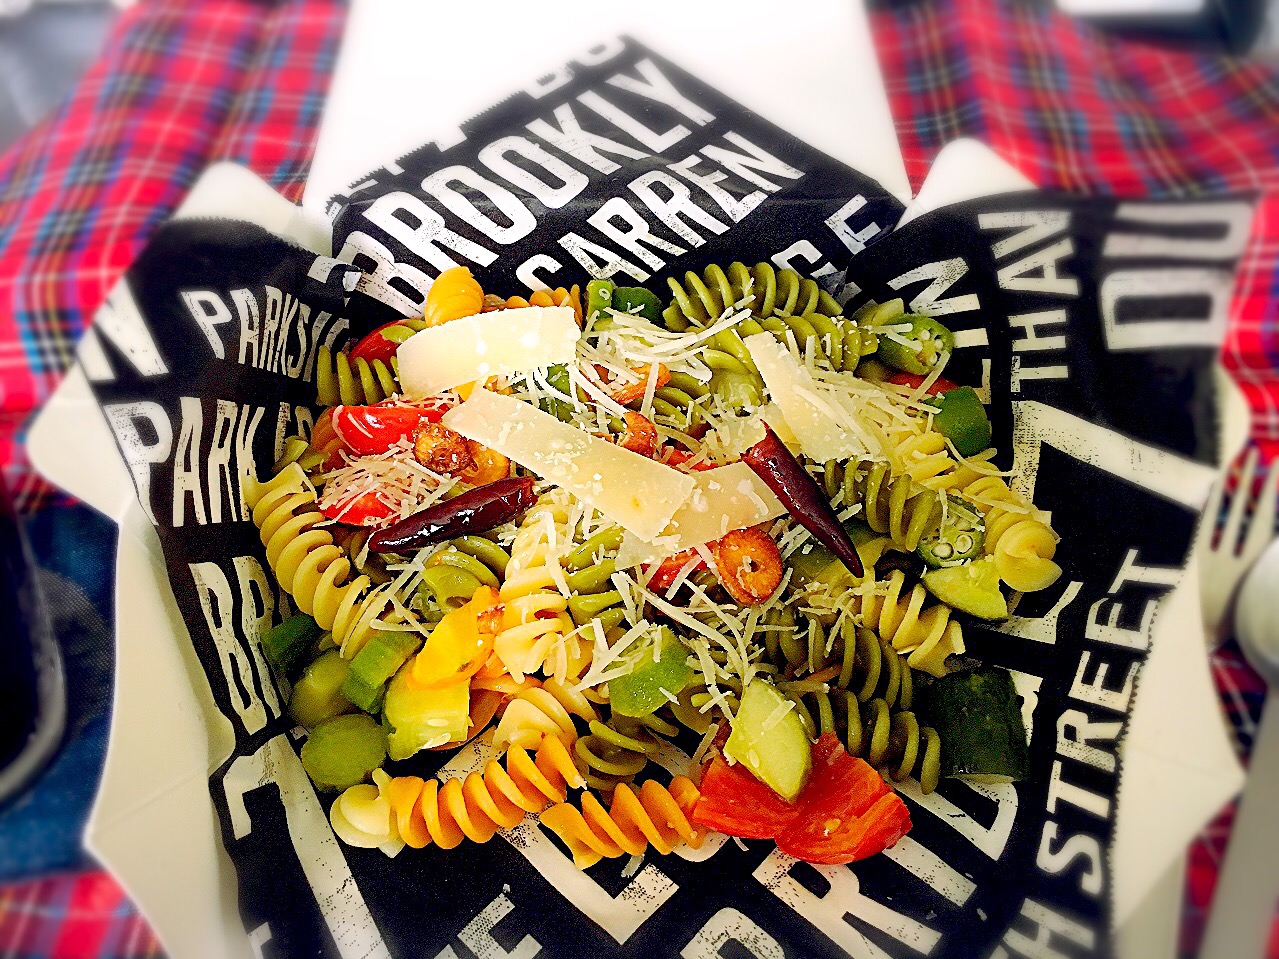 今日のランチボックス: 夏野菜とフジッリのペペロンチーノ、パルミジャーノ・レッジャーノたっぷりかけ